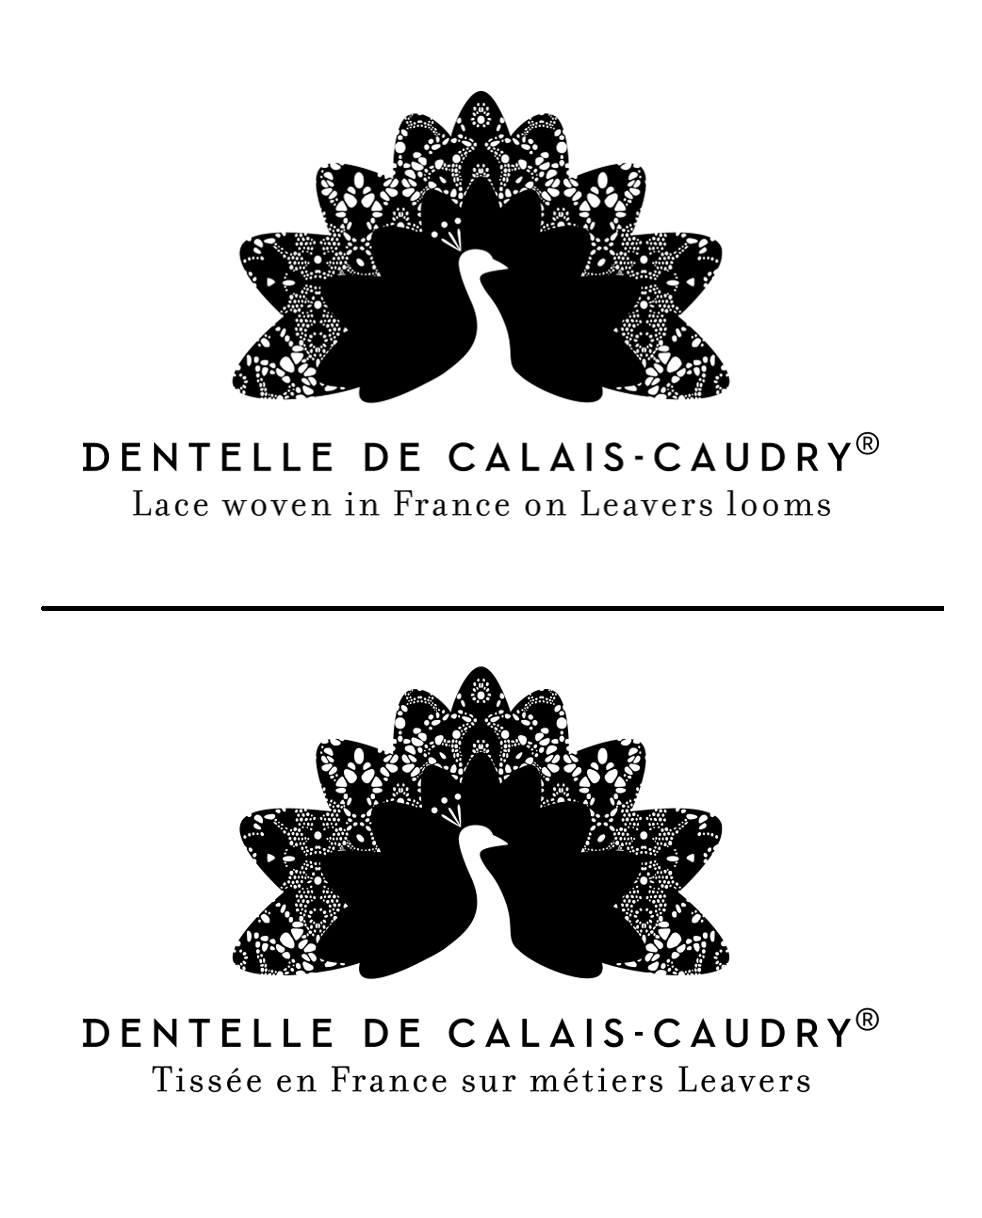 Dentelle de Calais-Caudry® lace certificate.